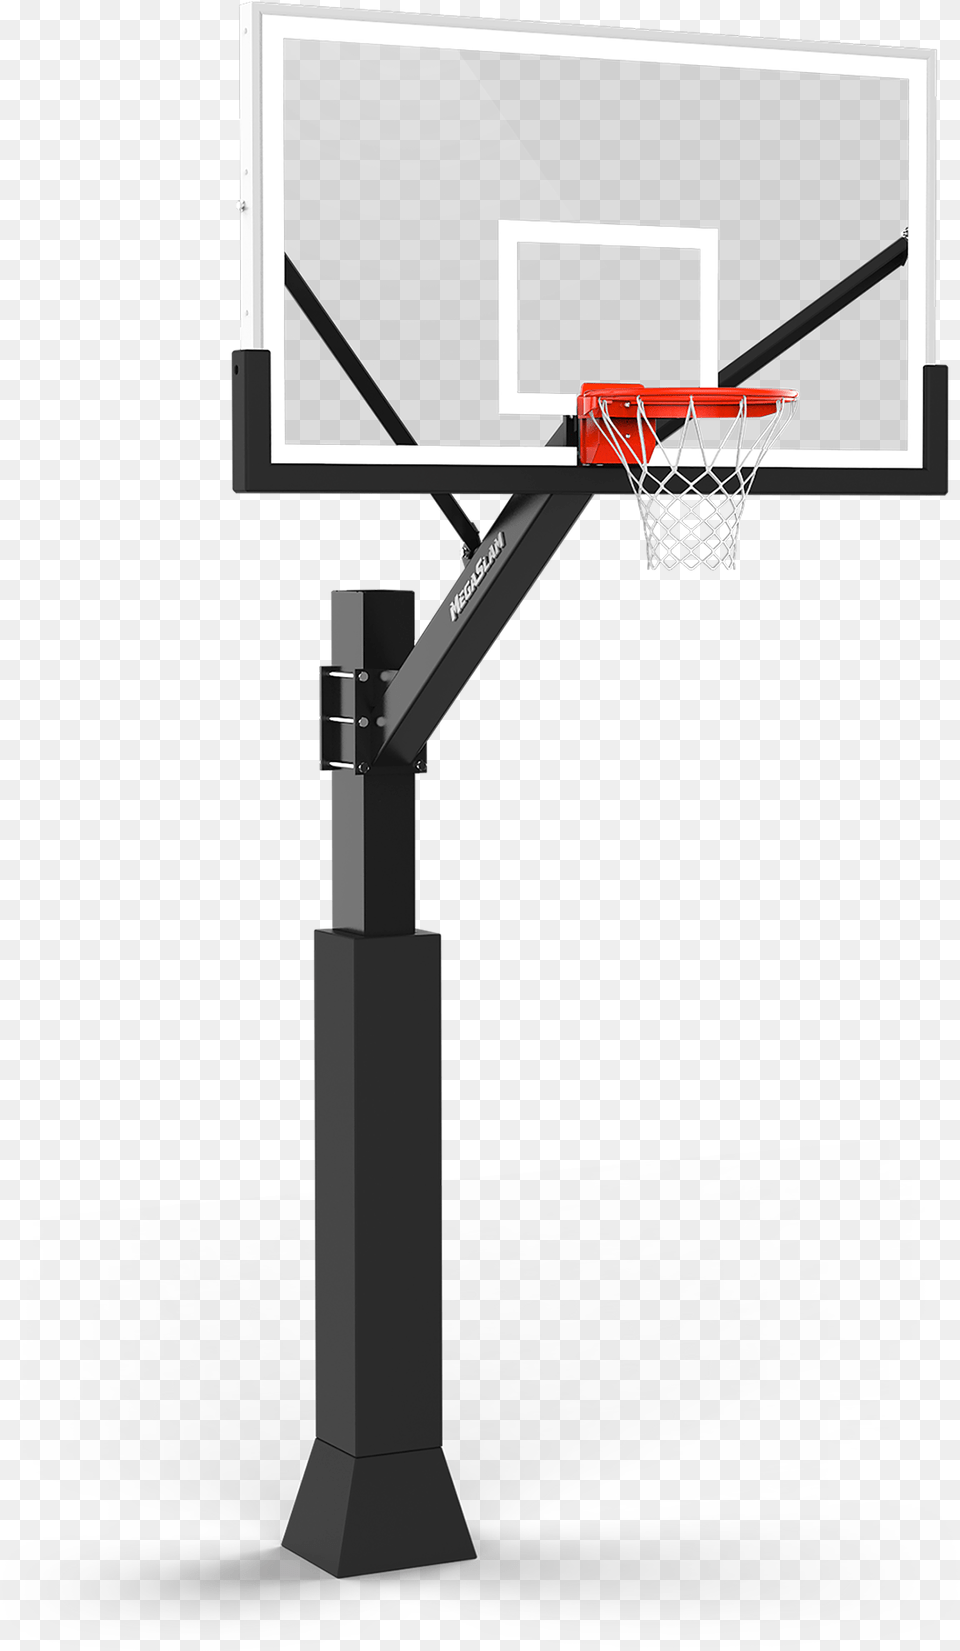 Mega Slam 72 Basketball Hoop Png Image